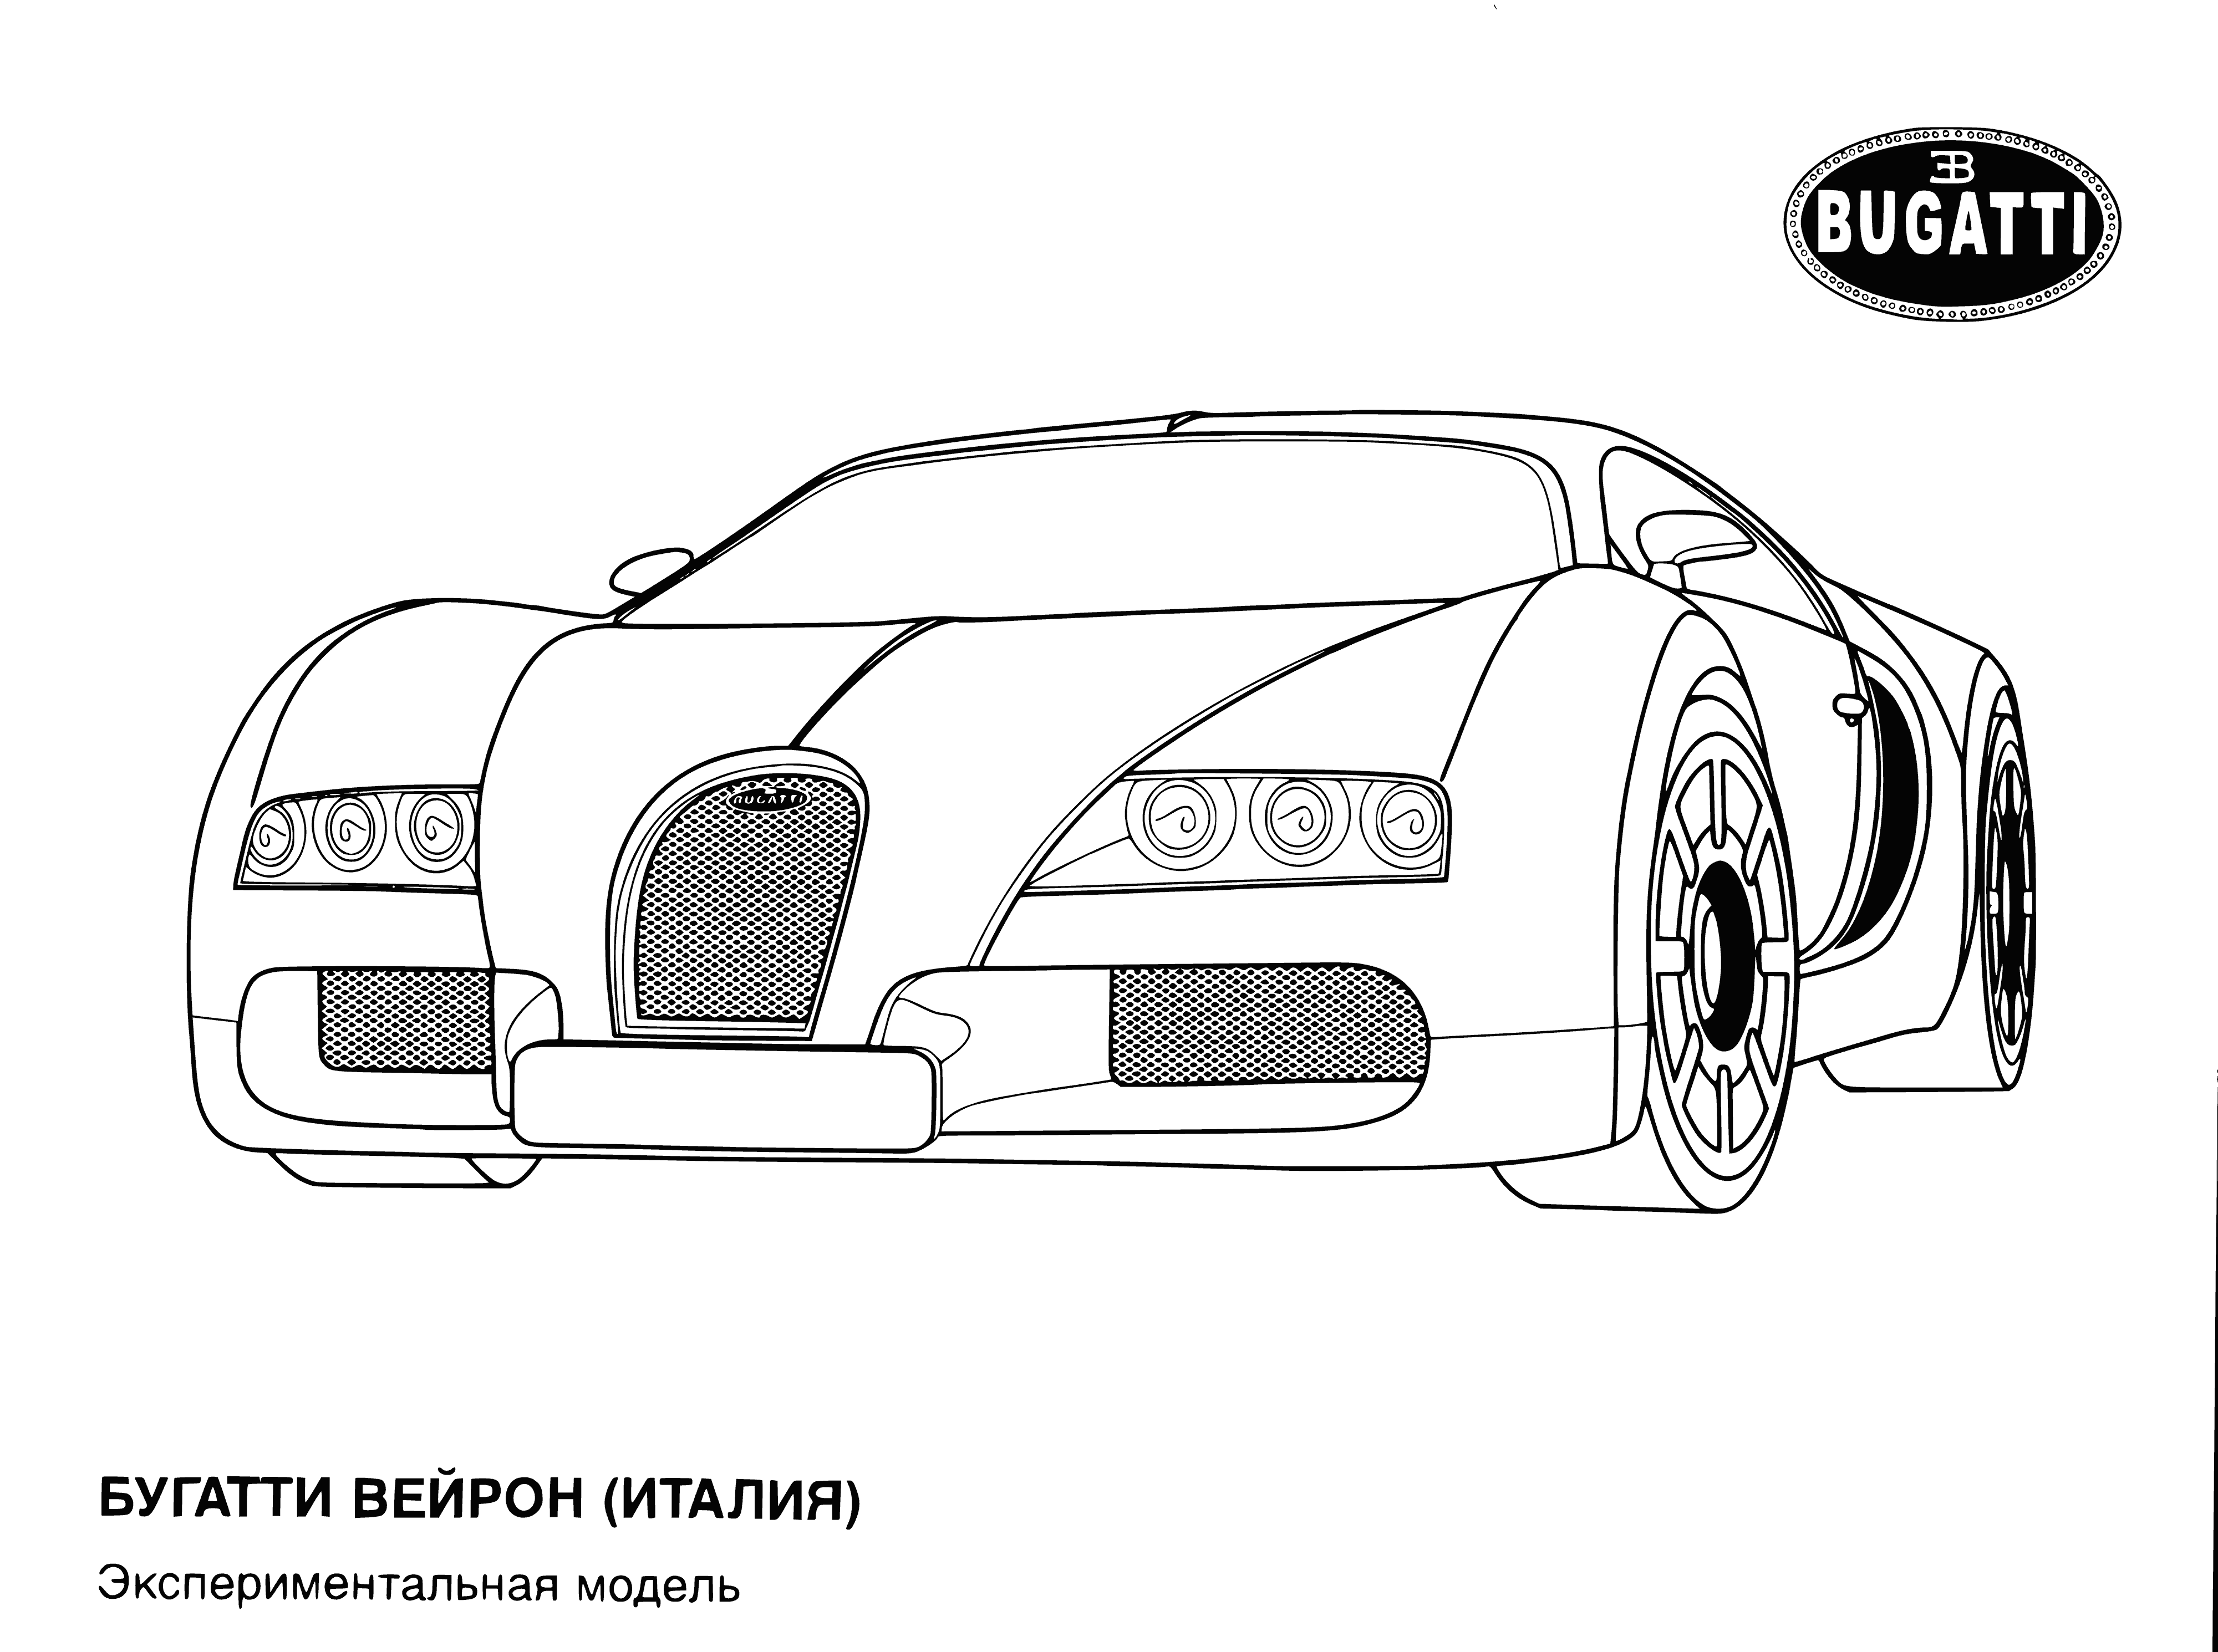 Bugatti (İtalya) boyama sayfası